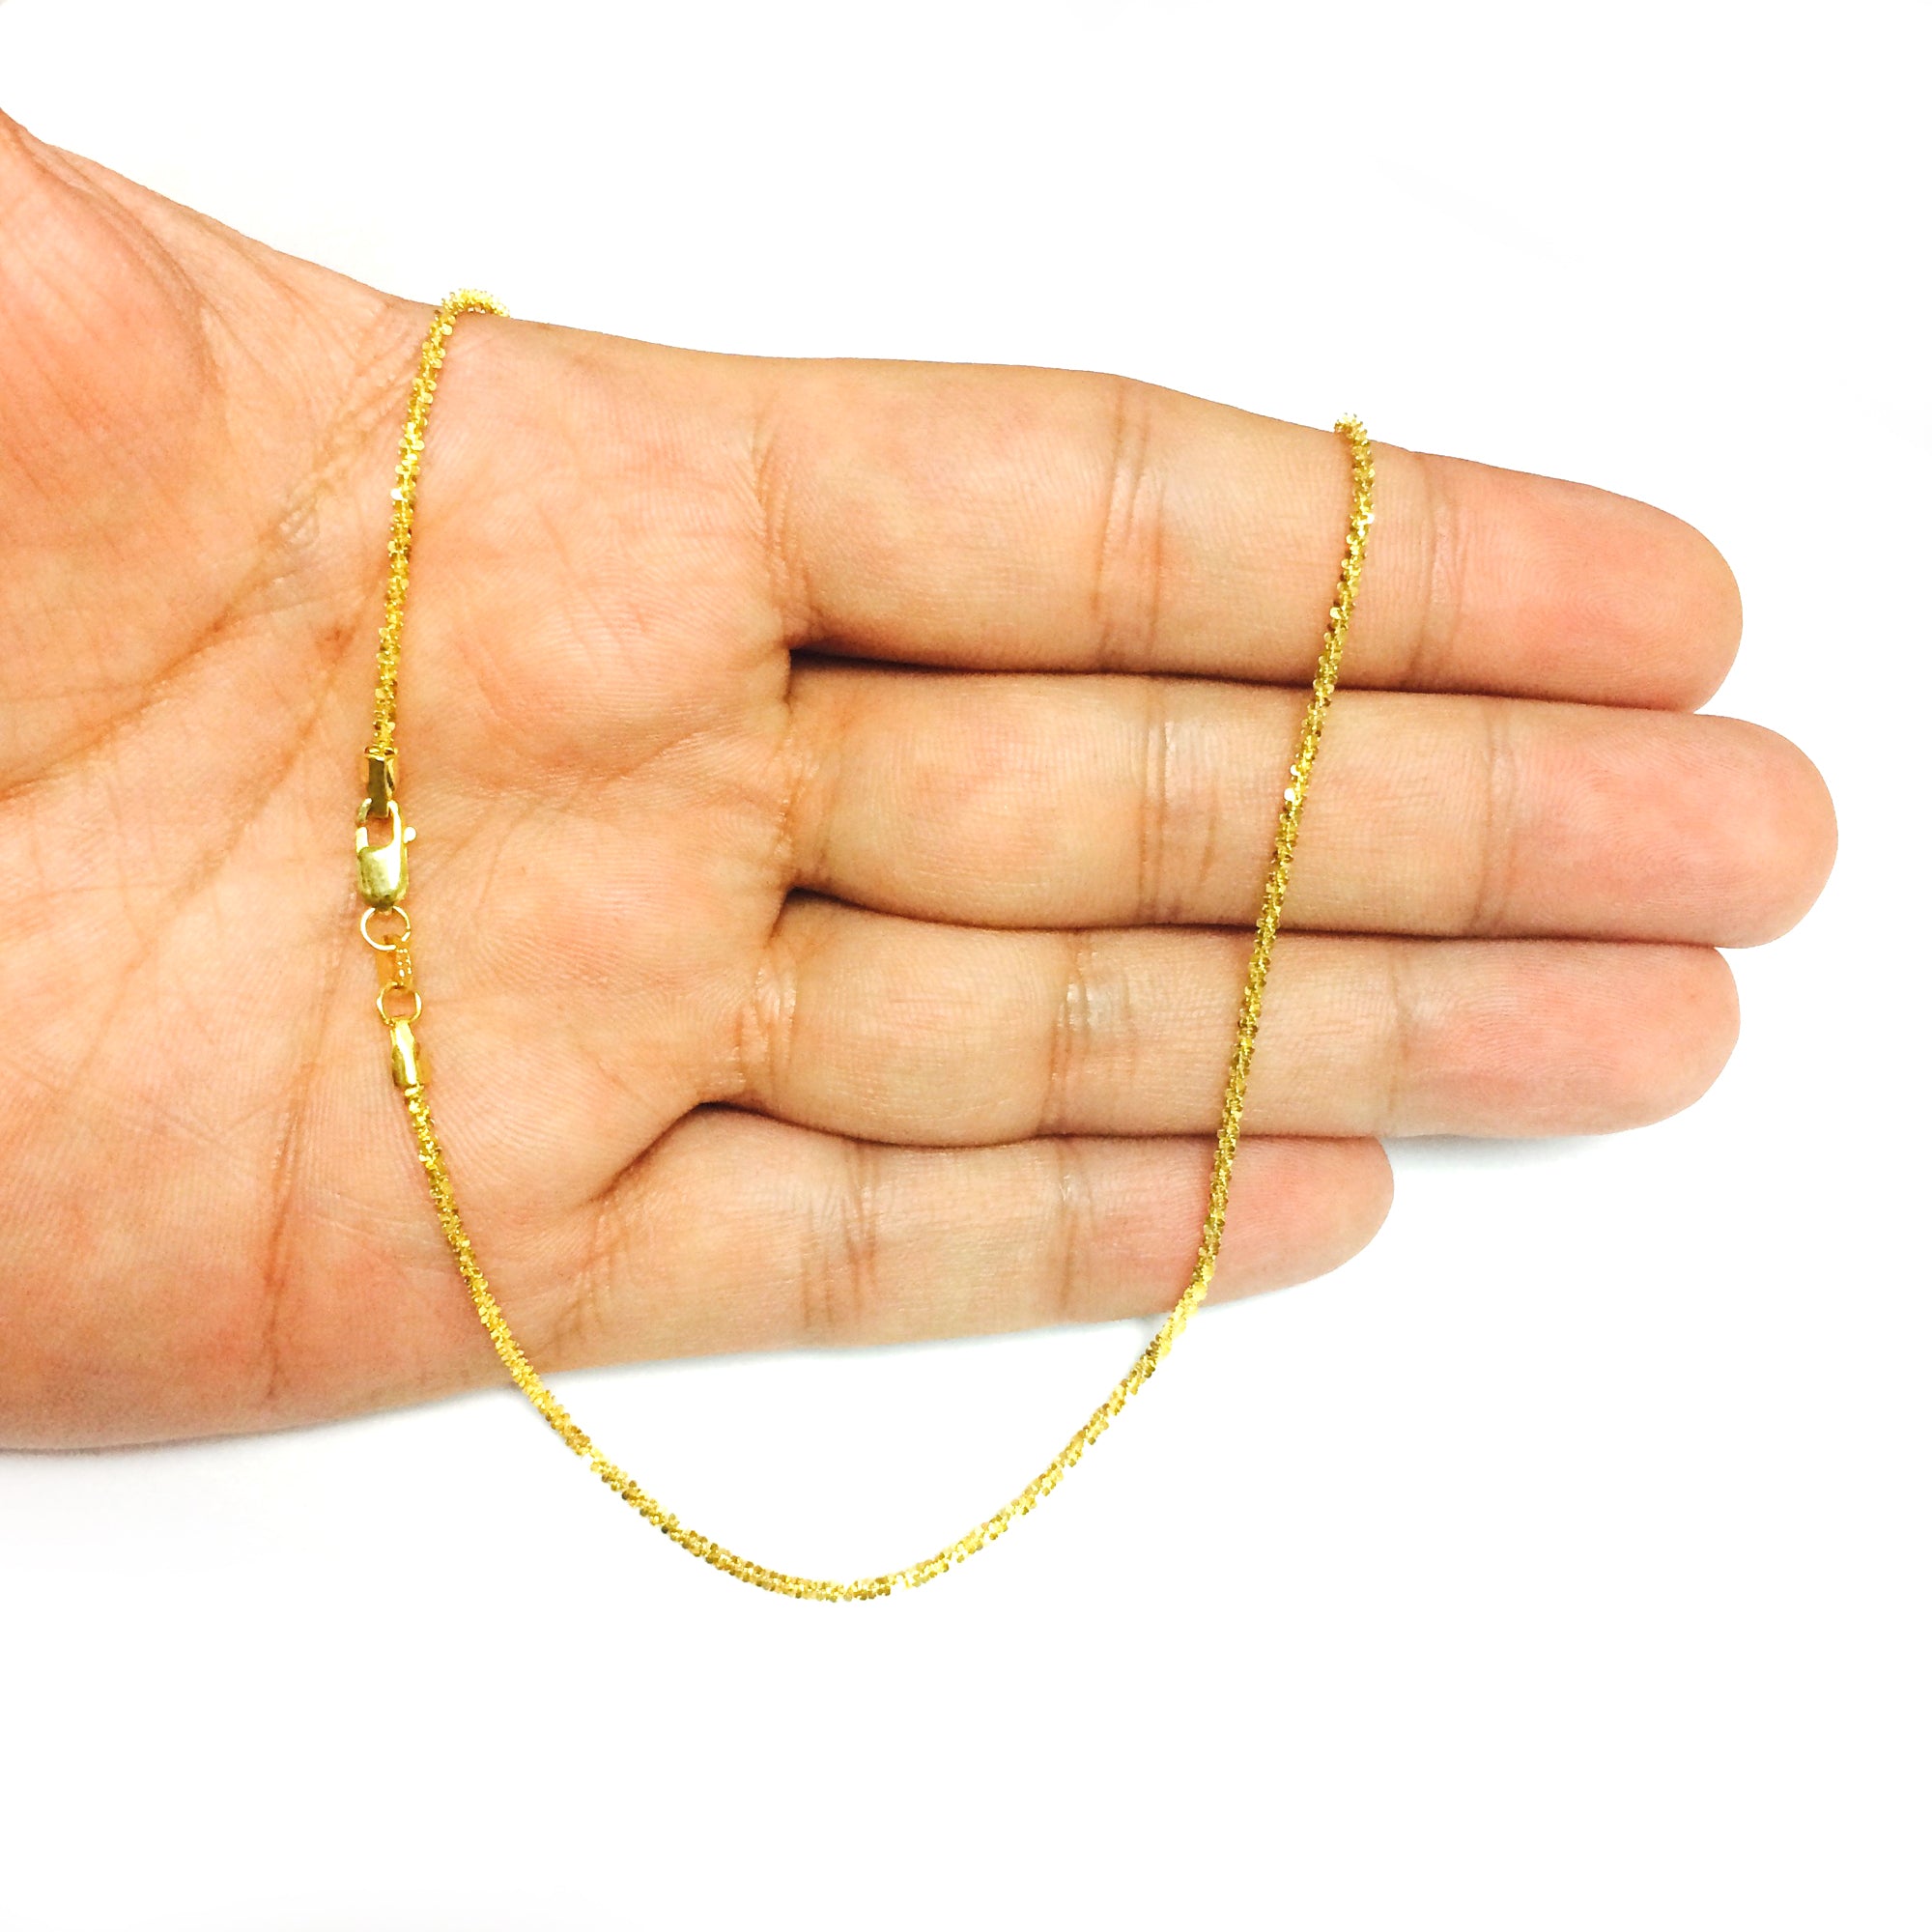 Collana a catena scintillante in oro giallo 14k, gioielli di alta moda da 1,5 mm per uomo e donna